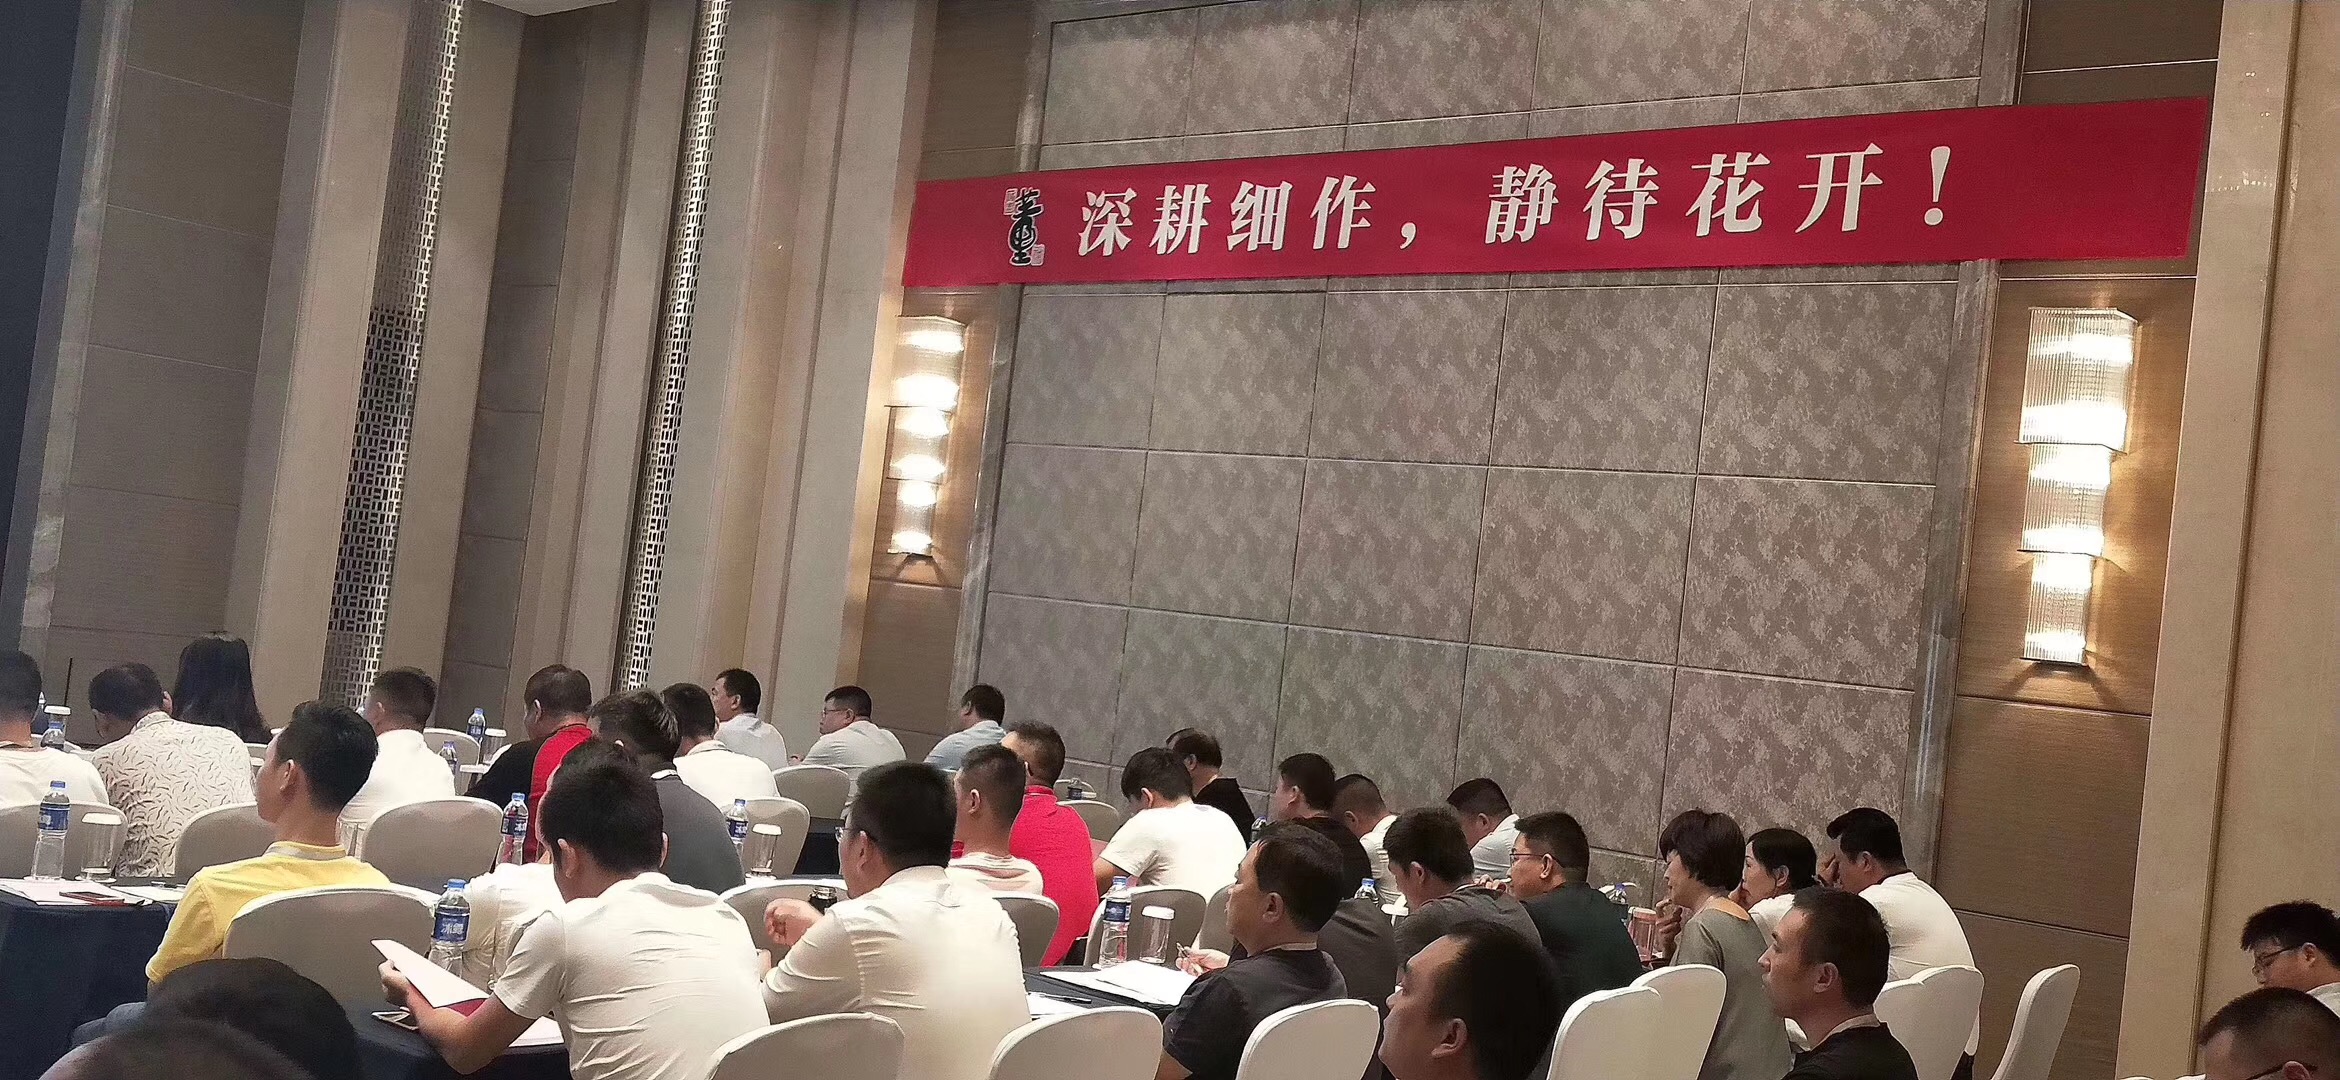 太阳集团城网站2017华南区域核心经销商培训交流会议